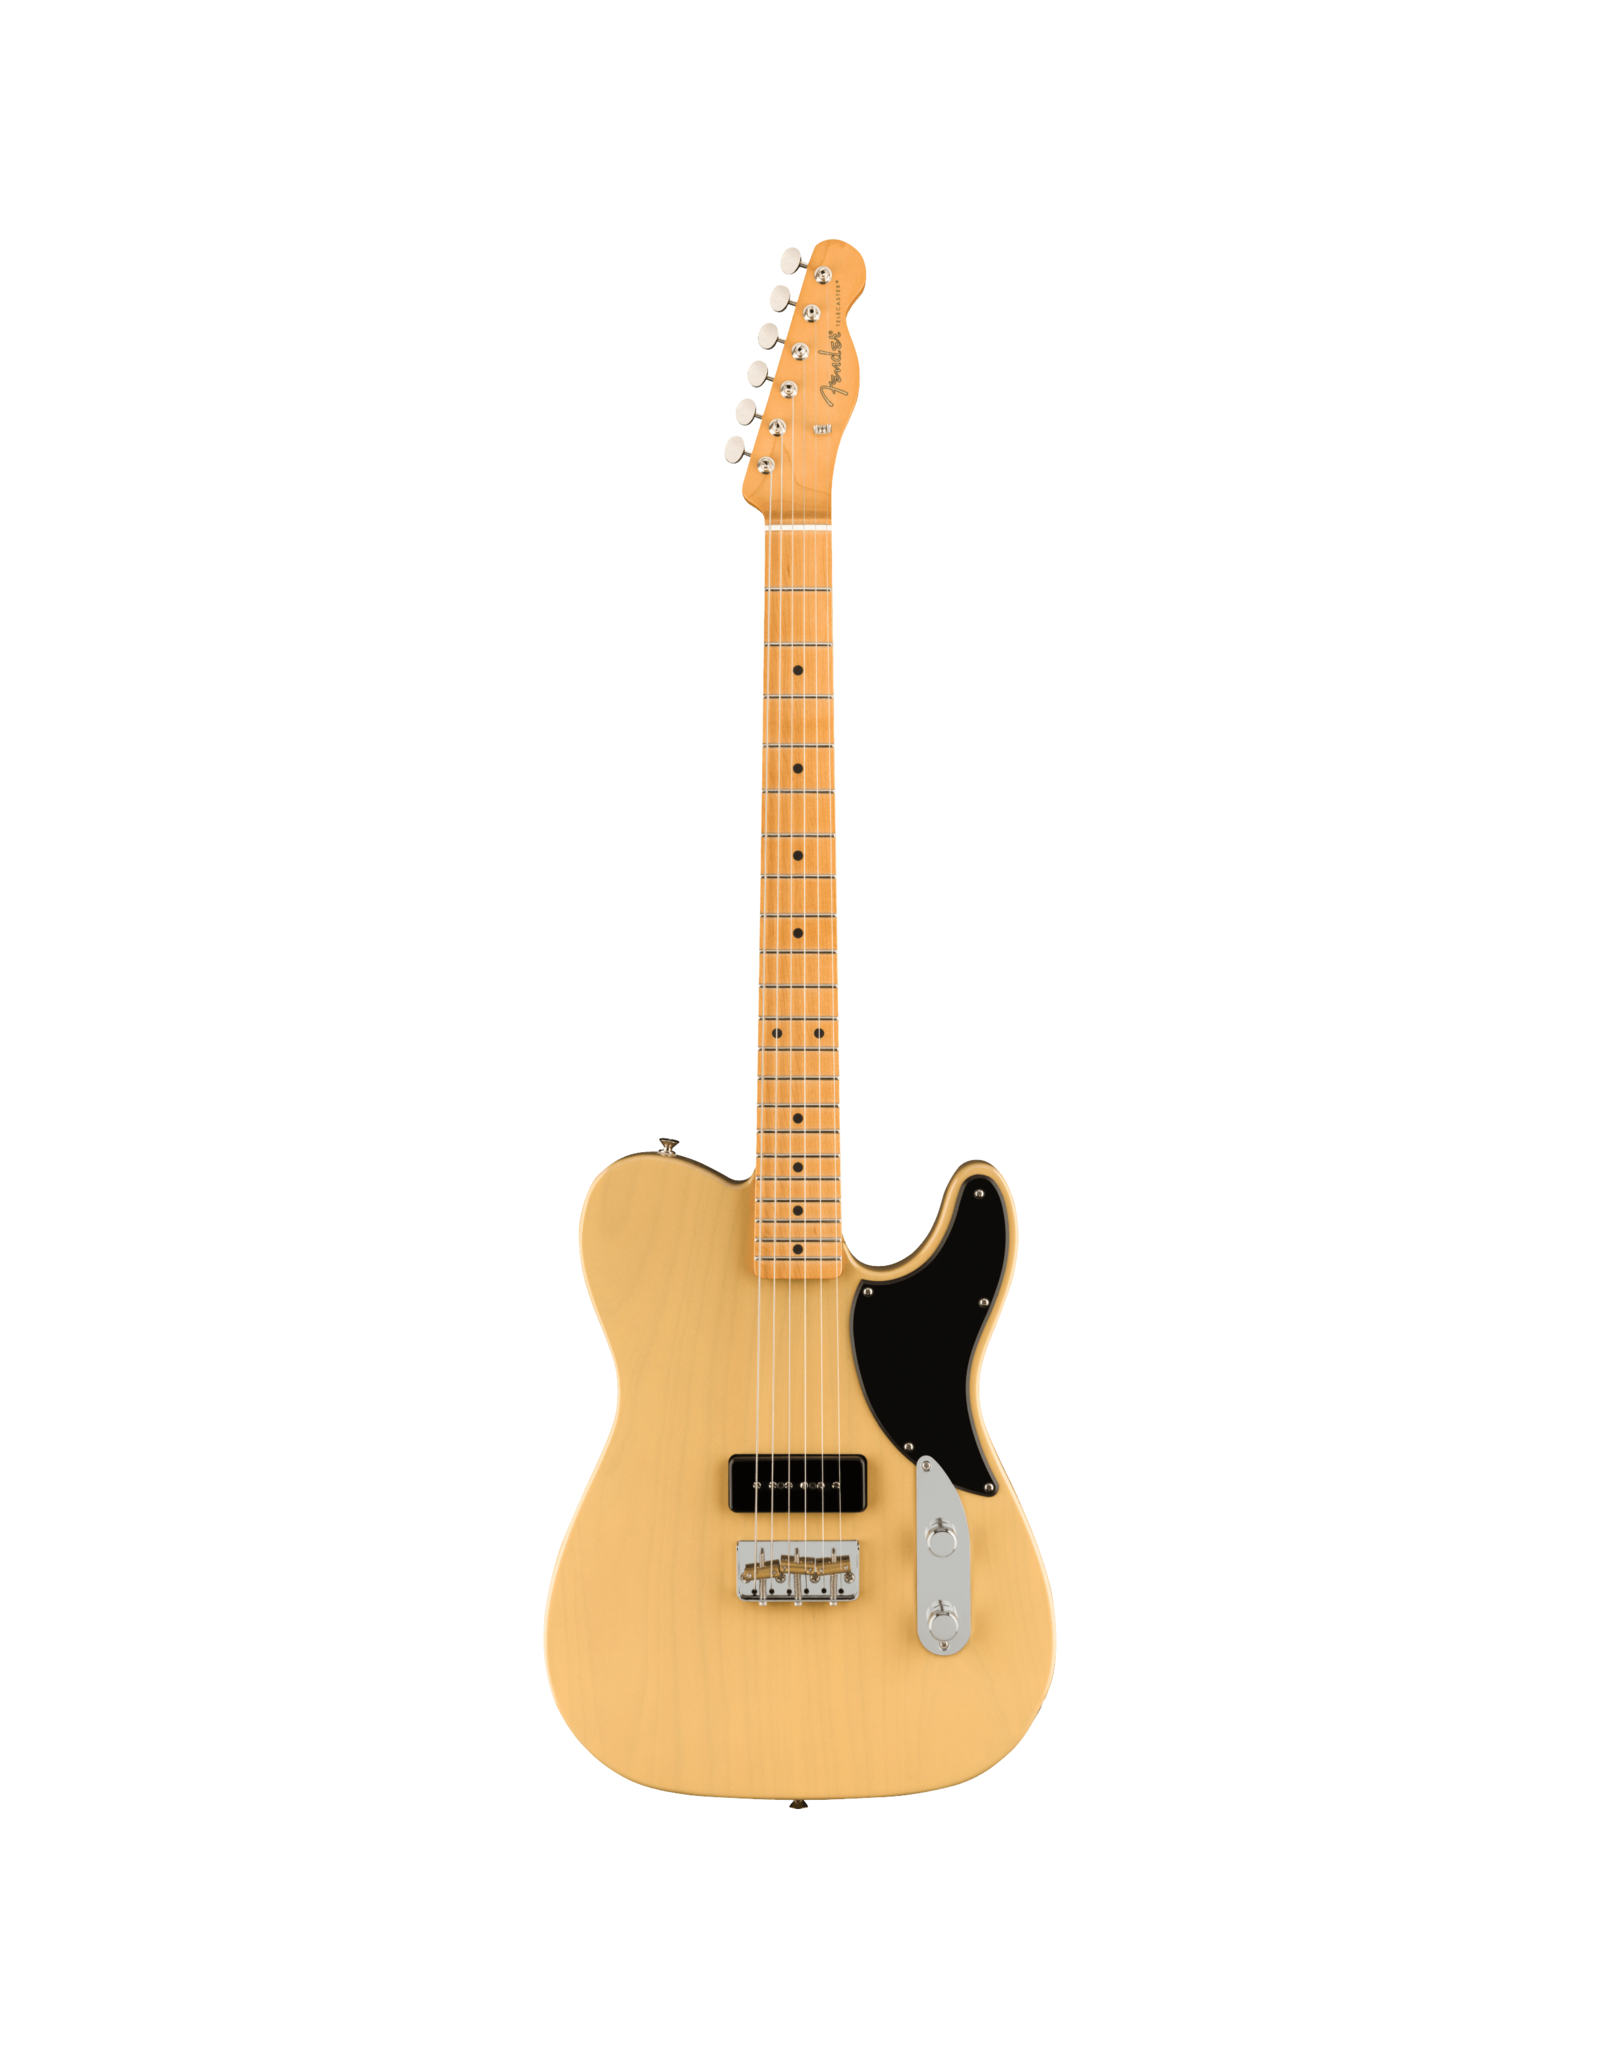 Fender Fender Noventa Telecaster,  Vintage Blonde, w/deluxe gig bag